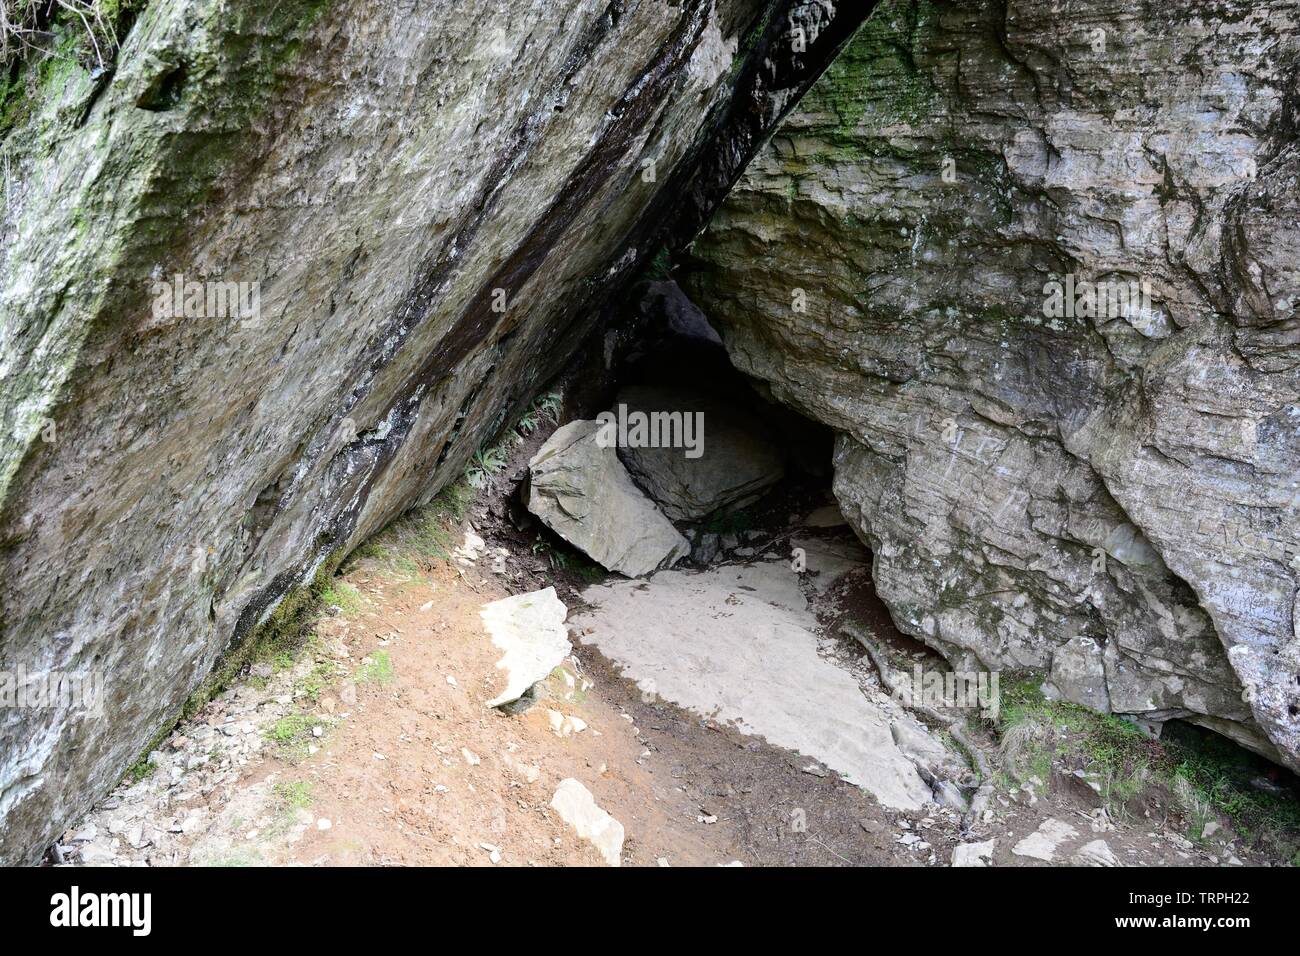 Entrée de la grotte de twm Sion 379 gallois de l'ITAO et figure dans le folklore gallois Rhandirmwyn Carmarthenshire Wales Cymru UK Banque D'Images